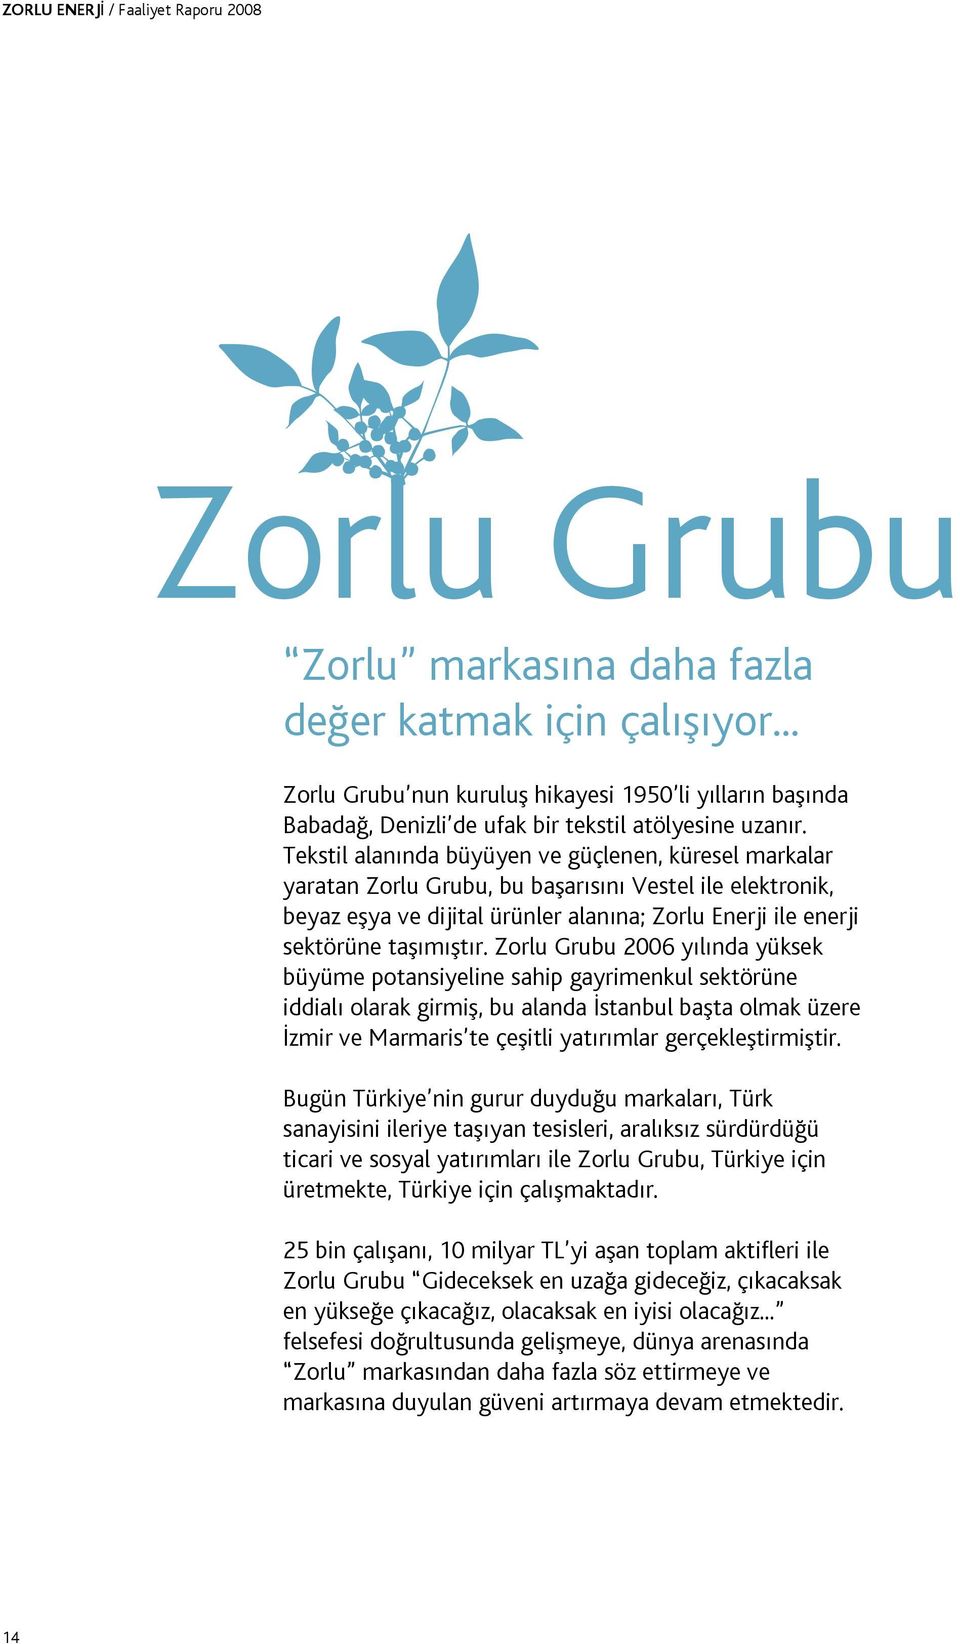 Zorlu Grubu 2006 yılında yüksek büyüme potansiyeline sahip gayrimenkul sektörüne iddialı olarak girmiş, bu alanda İstanbul başta olmak üzere İzmir ve Marmaris te çeşitli yatırımlar gerçekleştirmiştir.